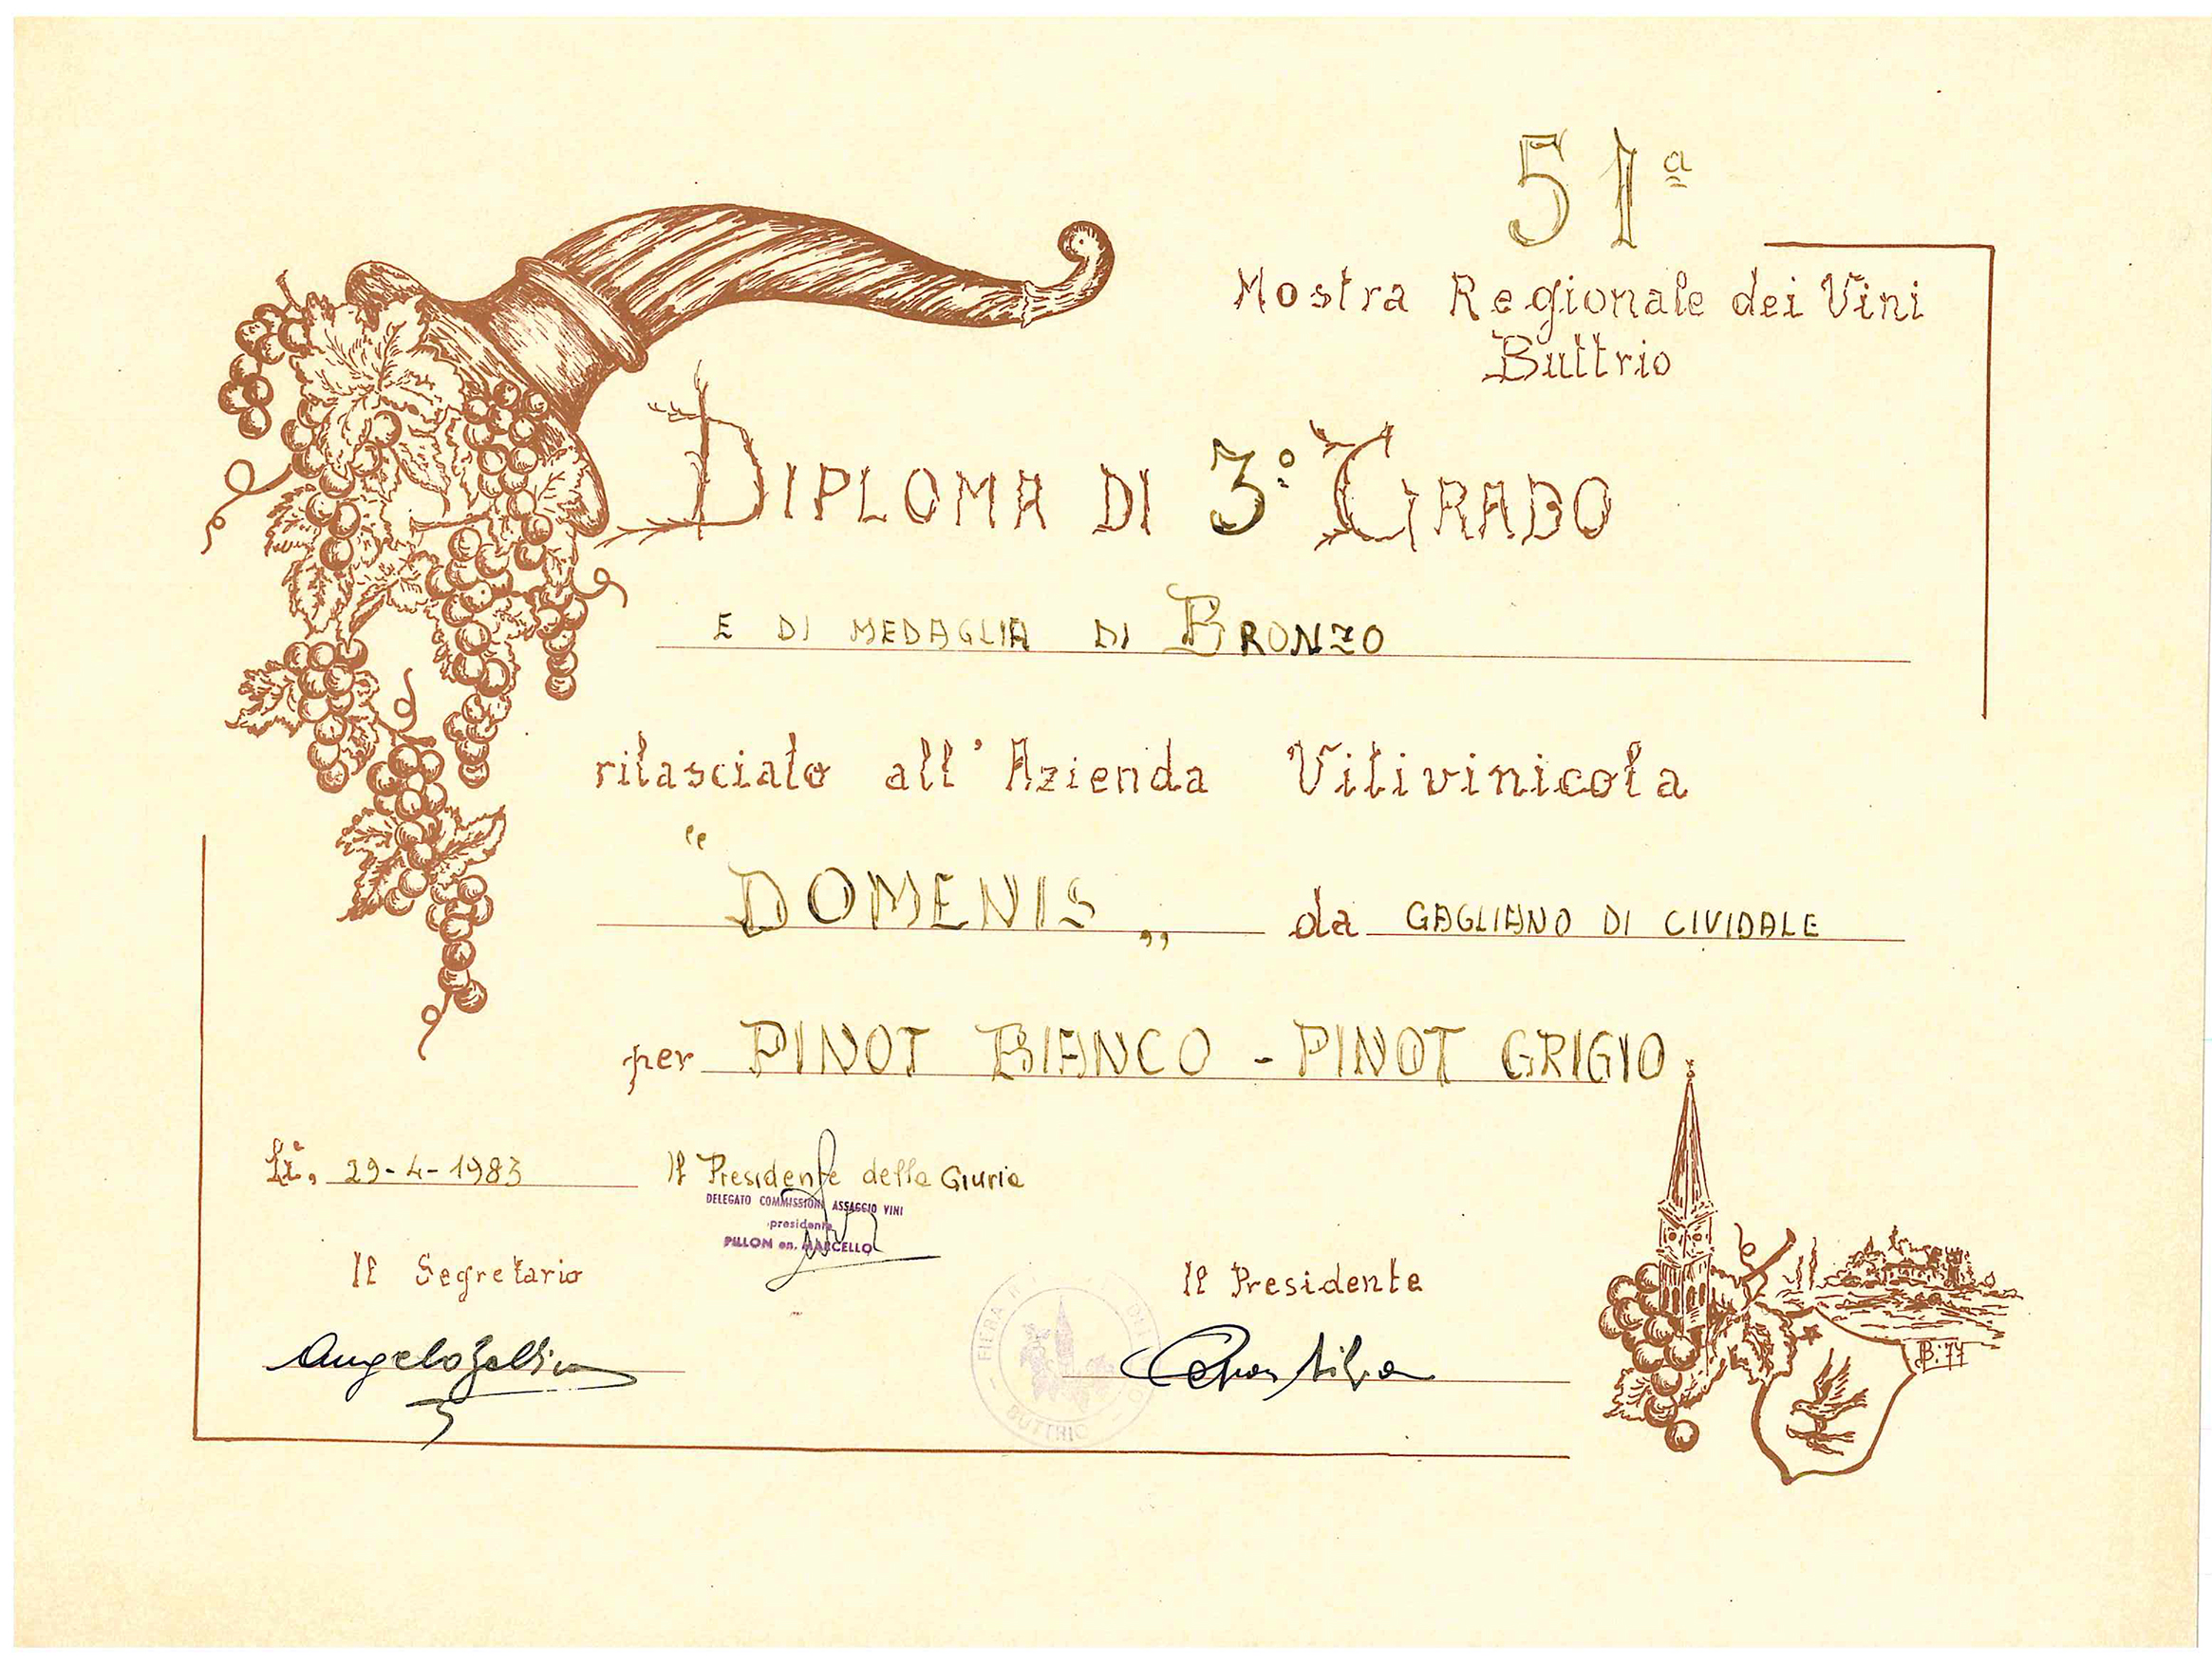 Mostra Regionale dei Vini Buttrio 1983 – Pinot Bianco e Pinot Grigio